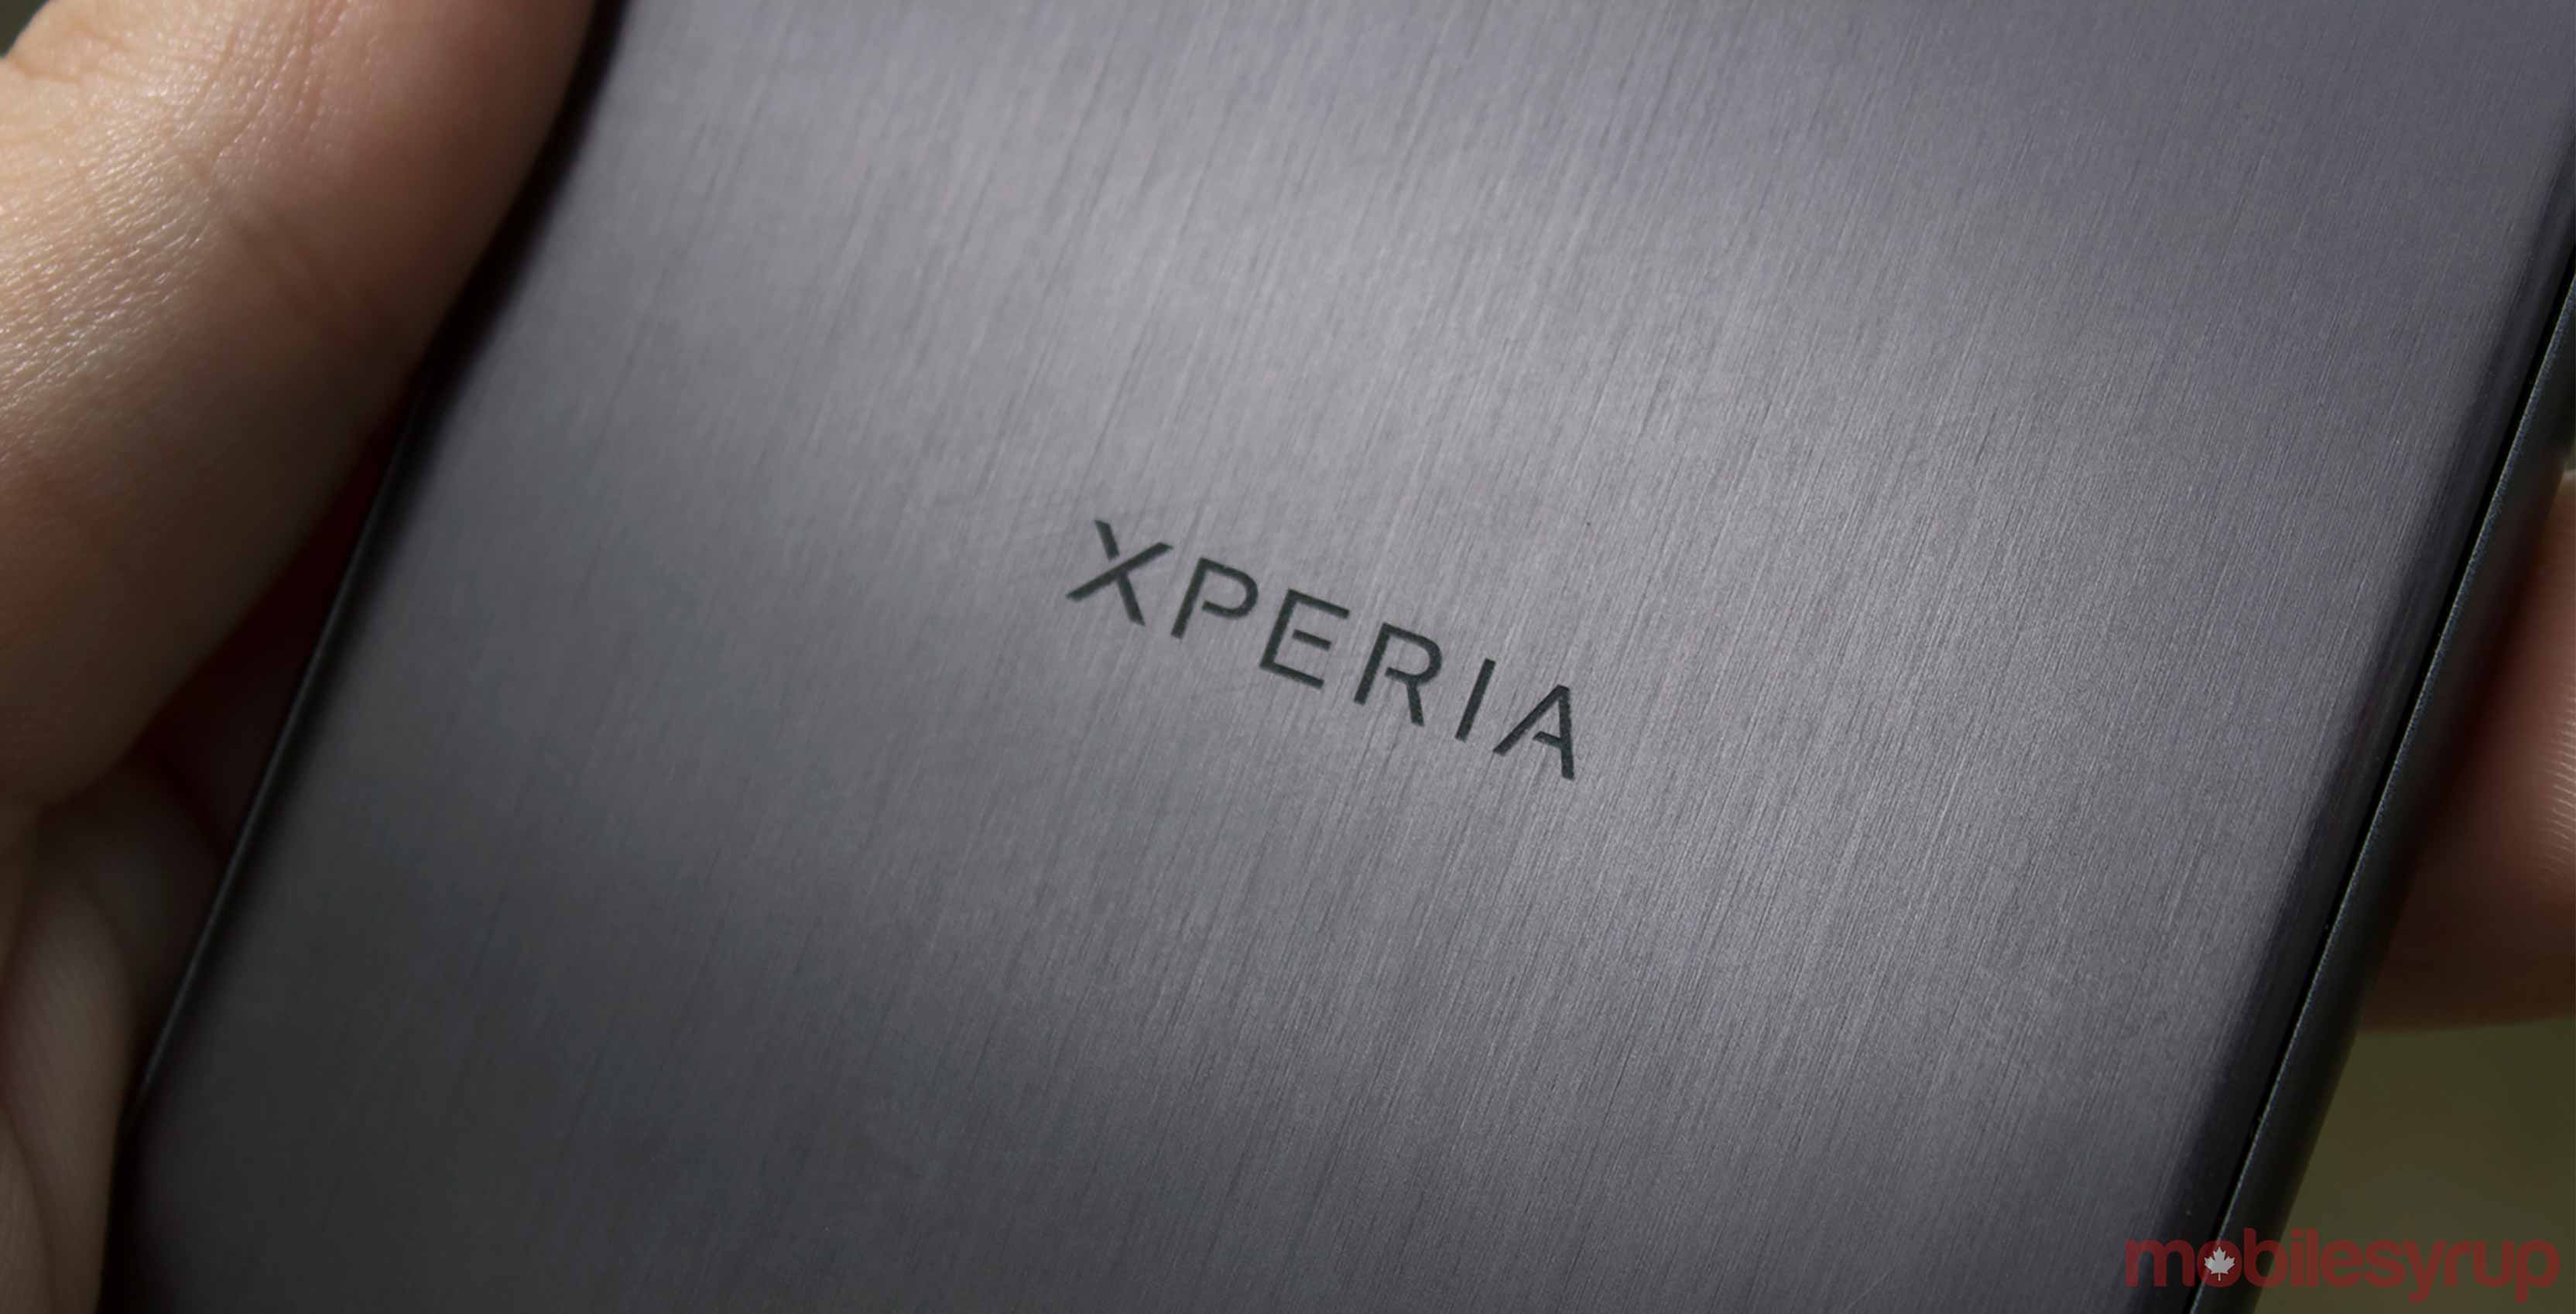 هاتف Xperia XZ1 | تسريبات جديدة تخص الهاتف القادم من سوني وصور تظهره من جميع الزوايا مدونة نظام أون لاين التقنية